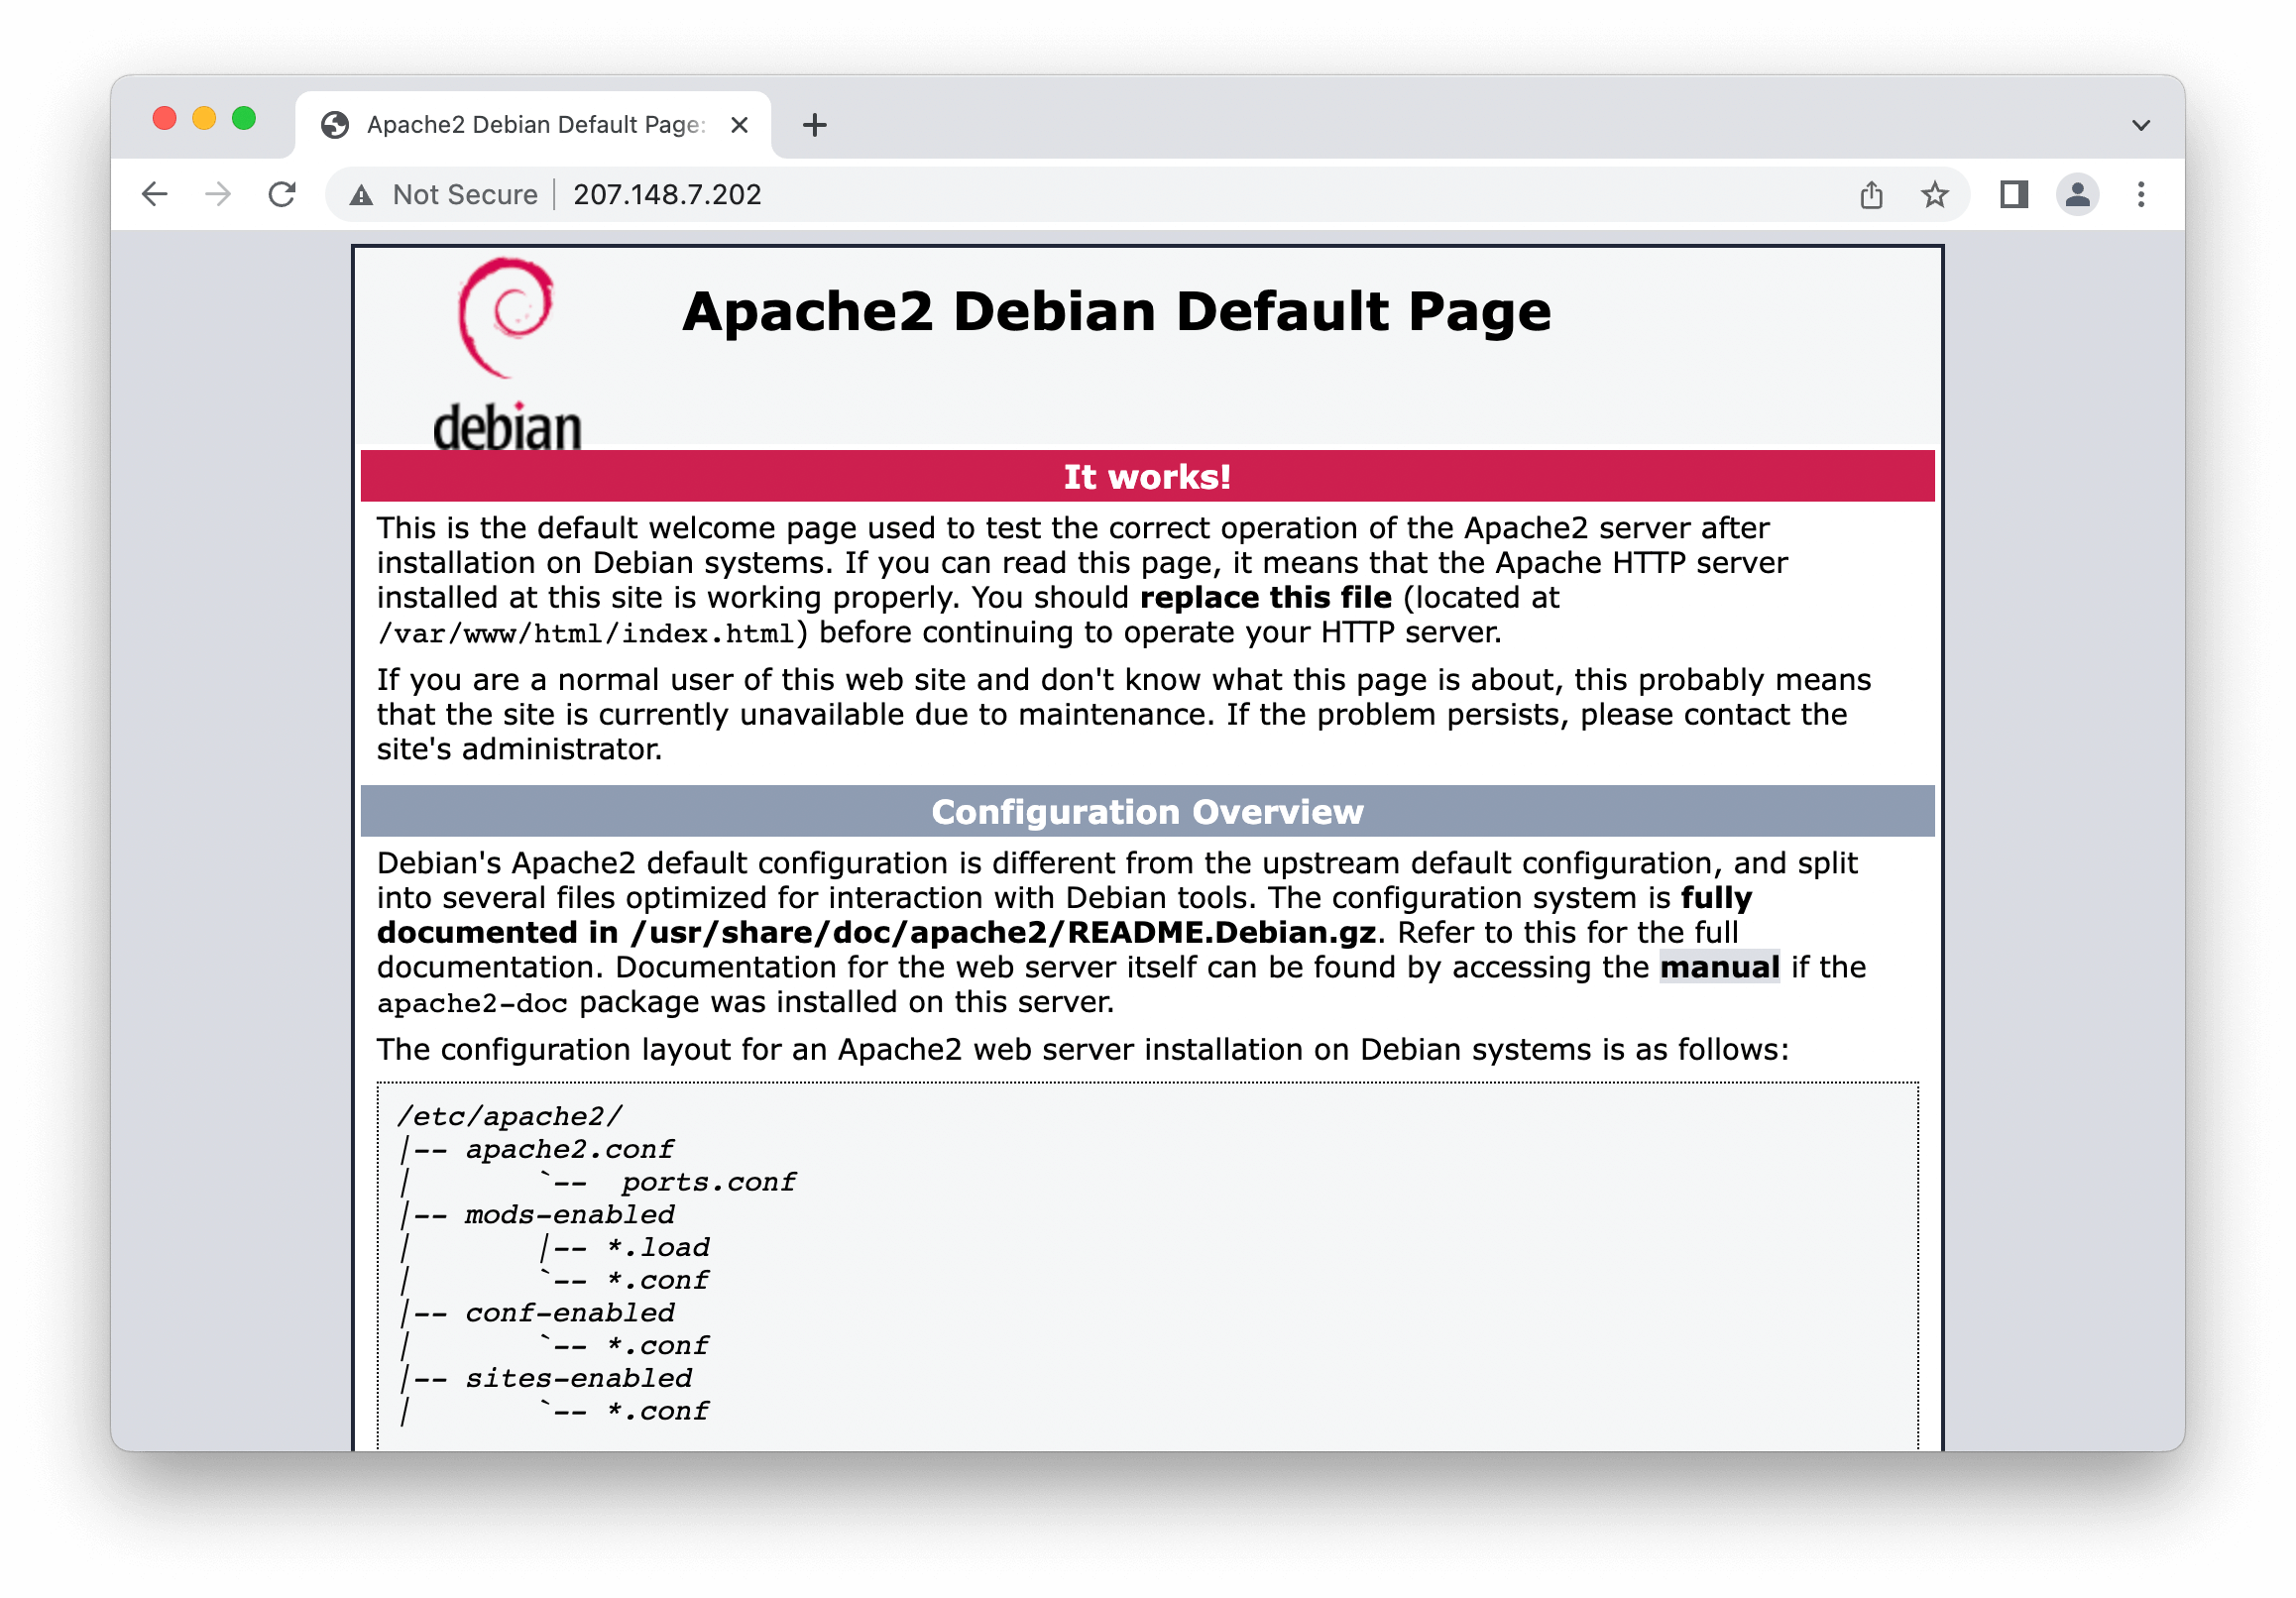 The defualt Debian's Apache landing web page